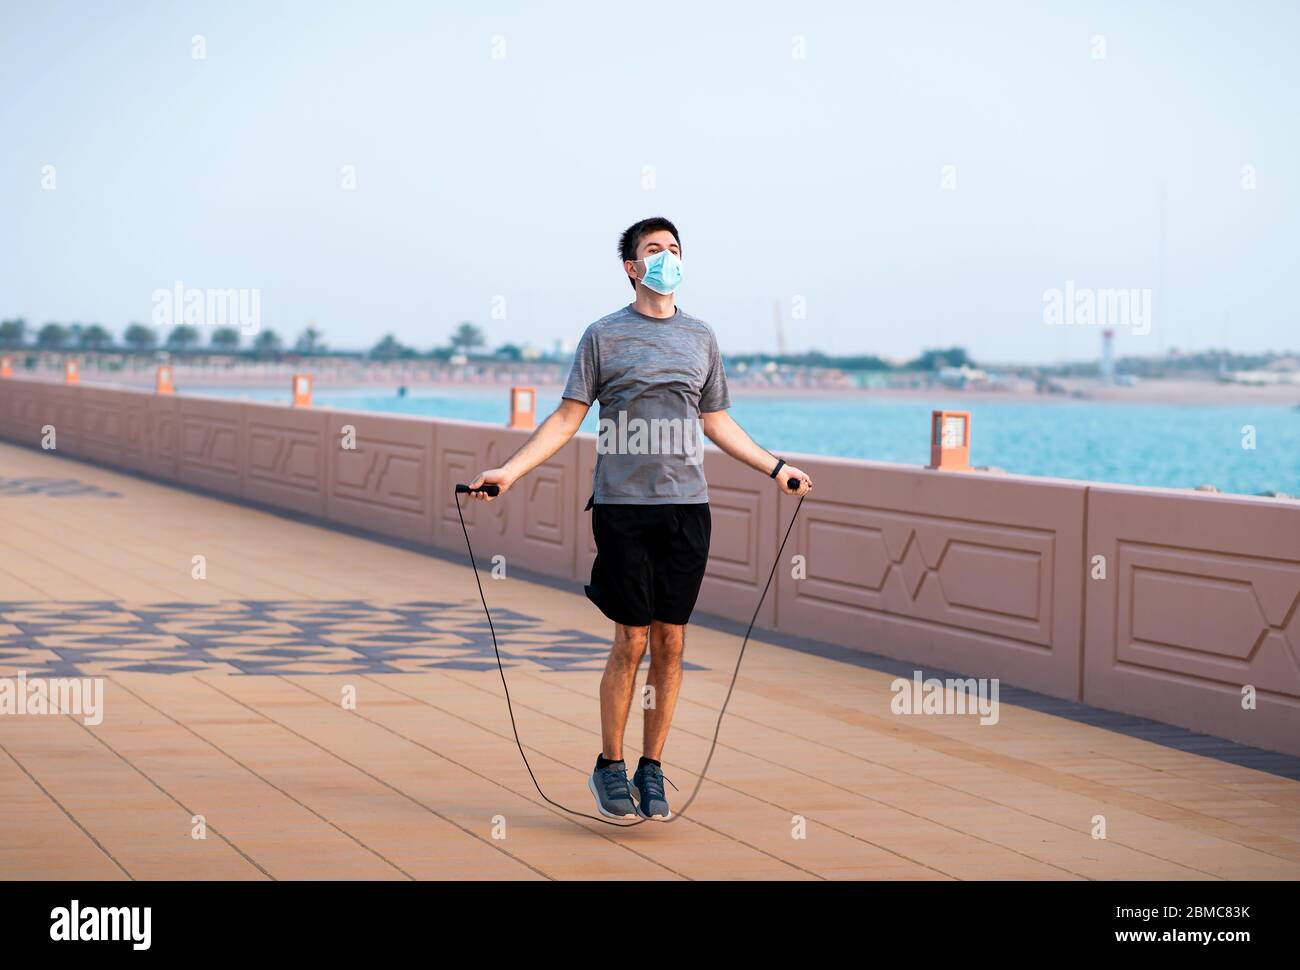 Homme s'exerçant avec une corde de saut et portant un masque chirurgical de protection à l'extérieur Banque D'Images